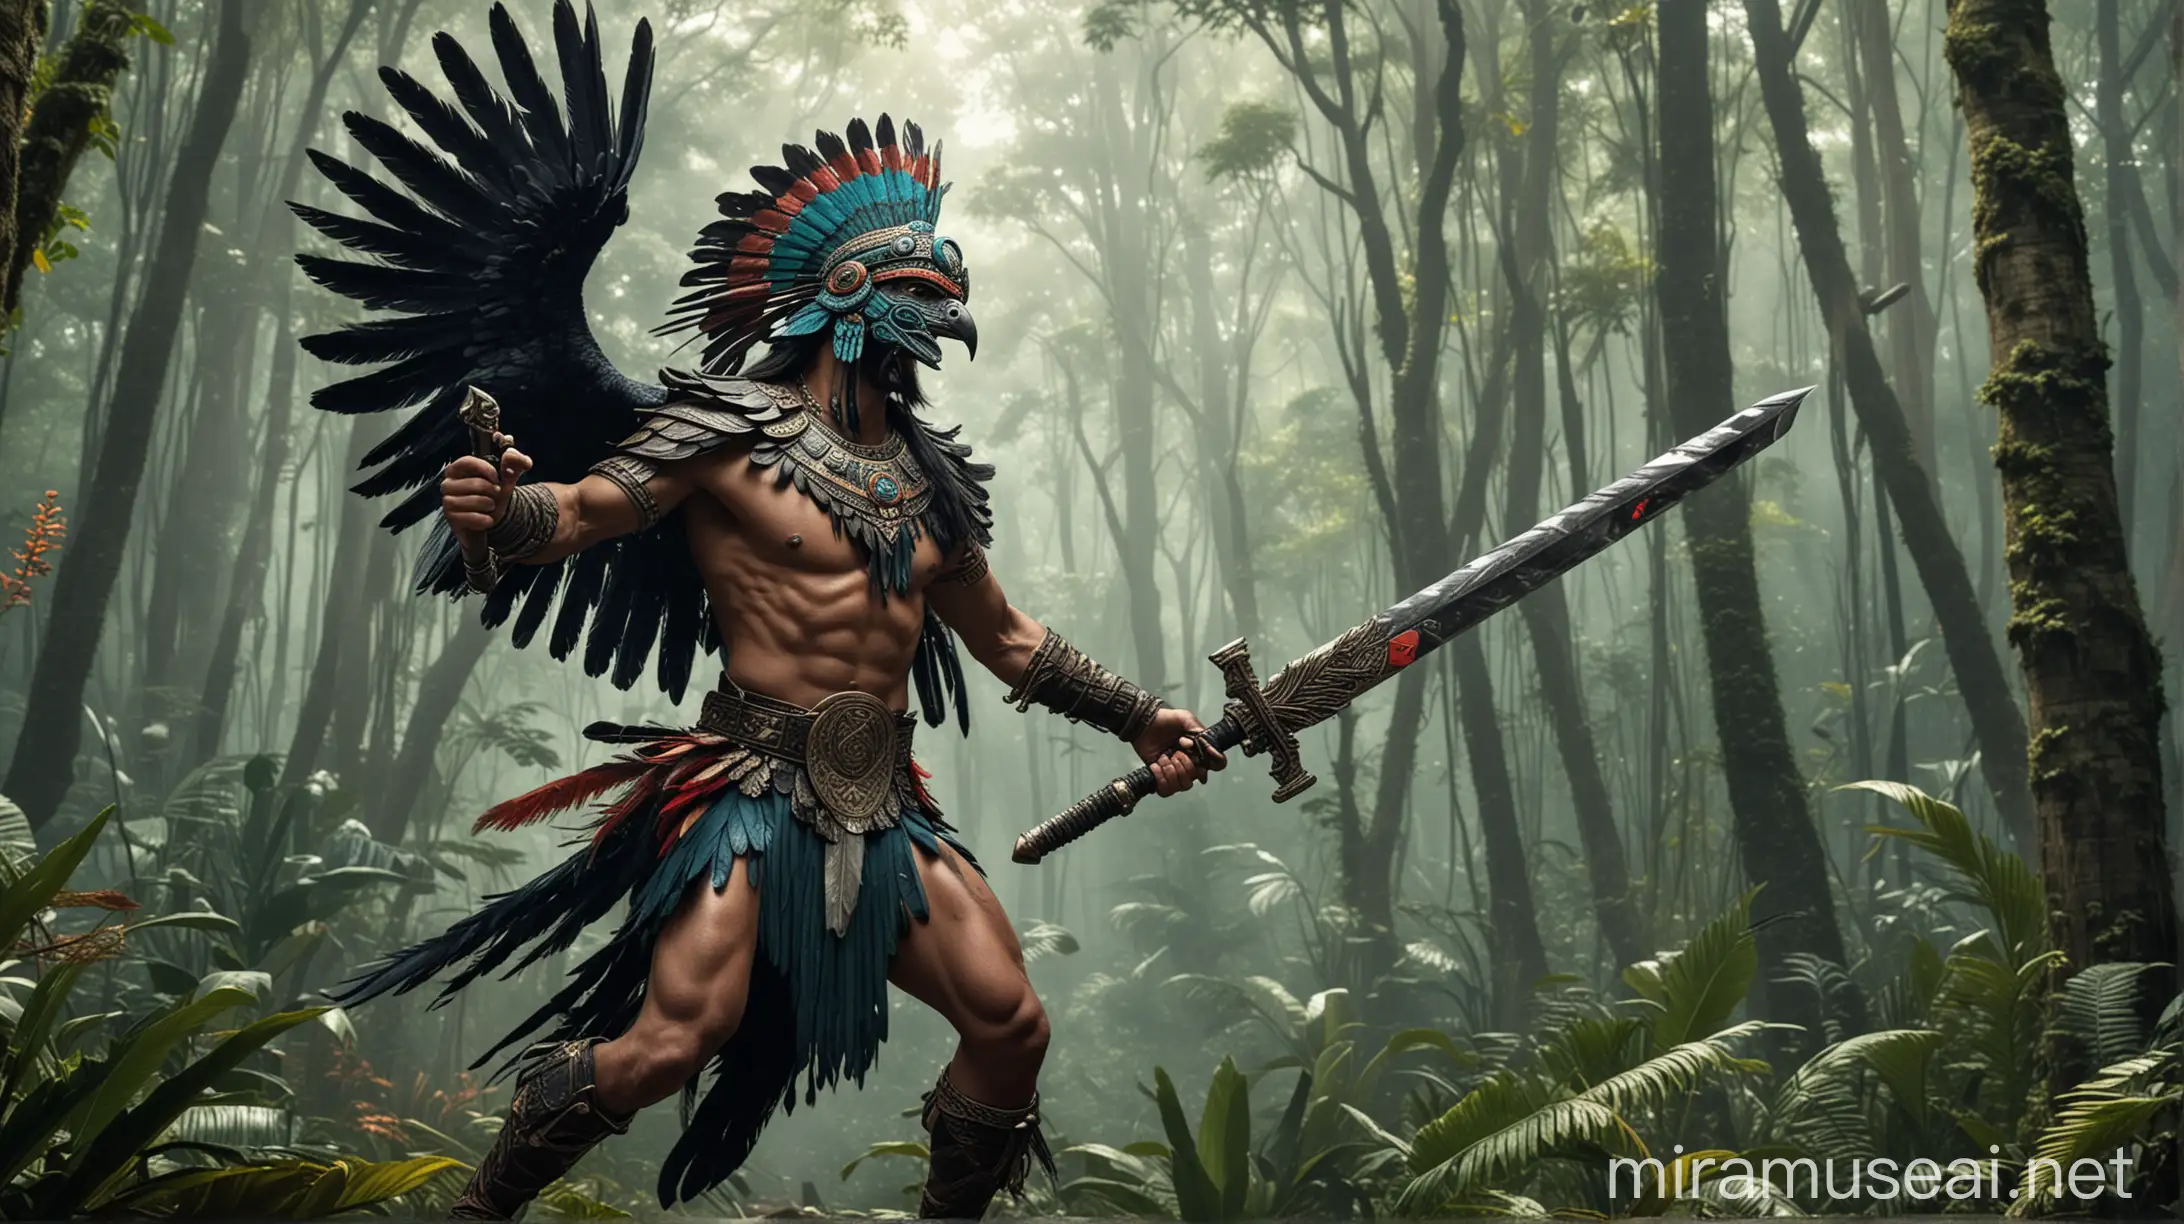 Un guerrero azteca con una espada ancha de obsidiana en la mano y un quetzal volando por el bosque atras de el Guerrero
